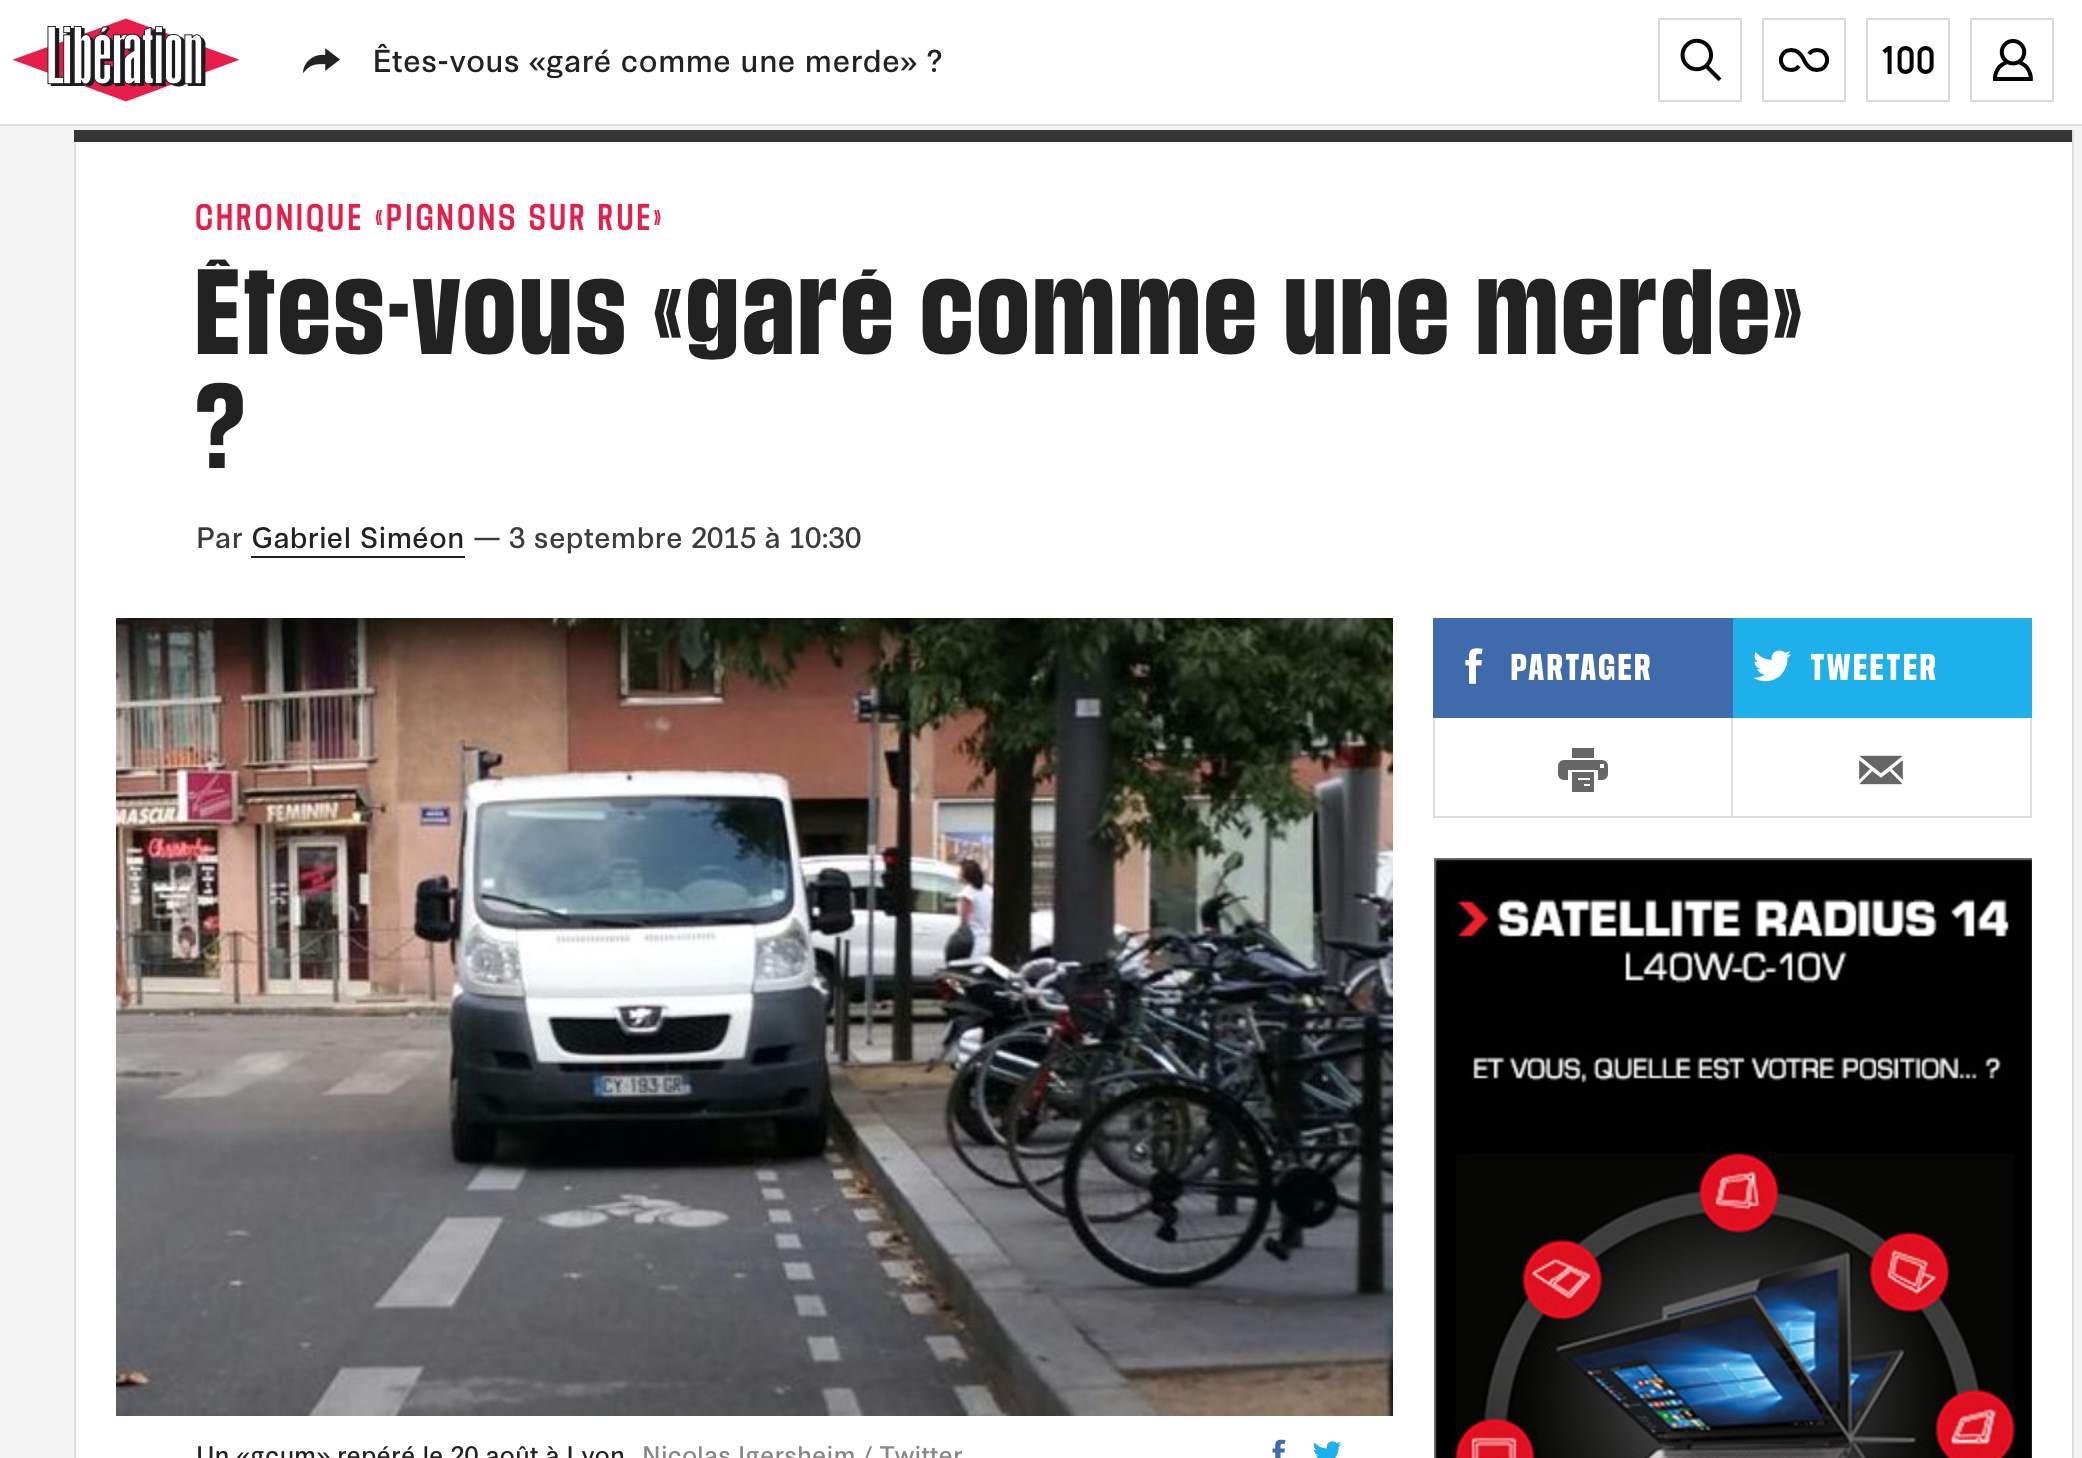 3 septembre 2015 - Libération